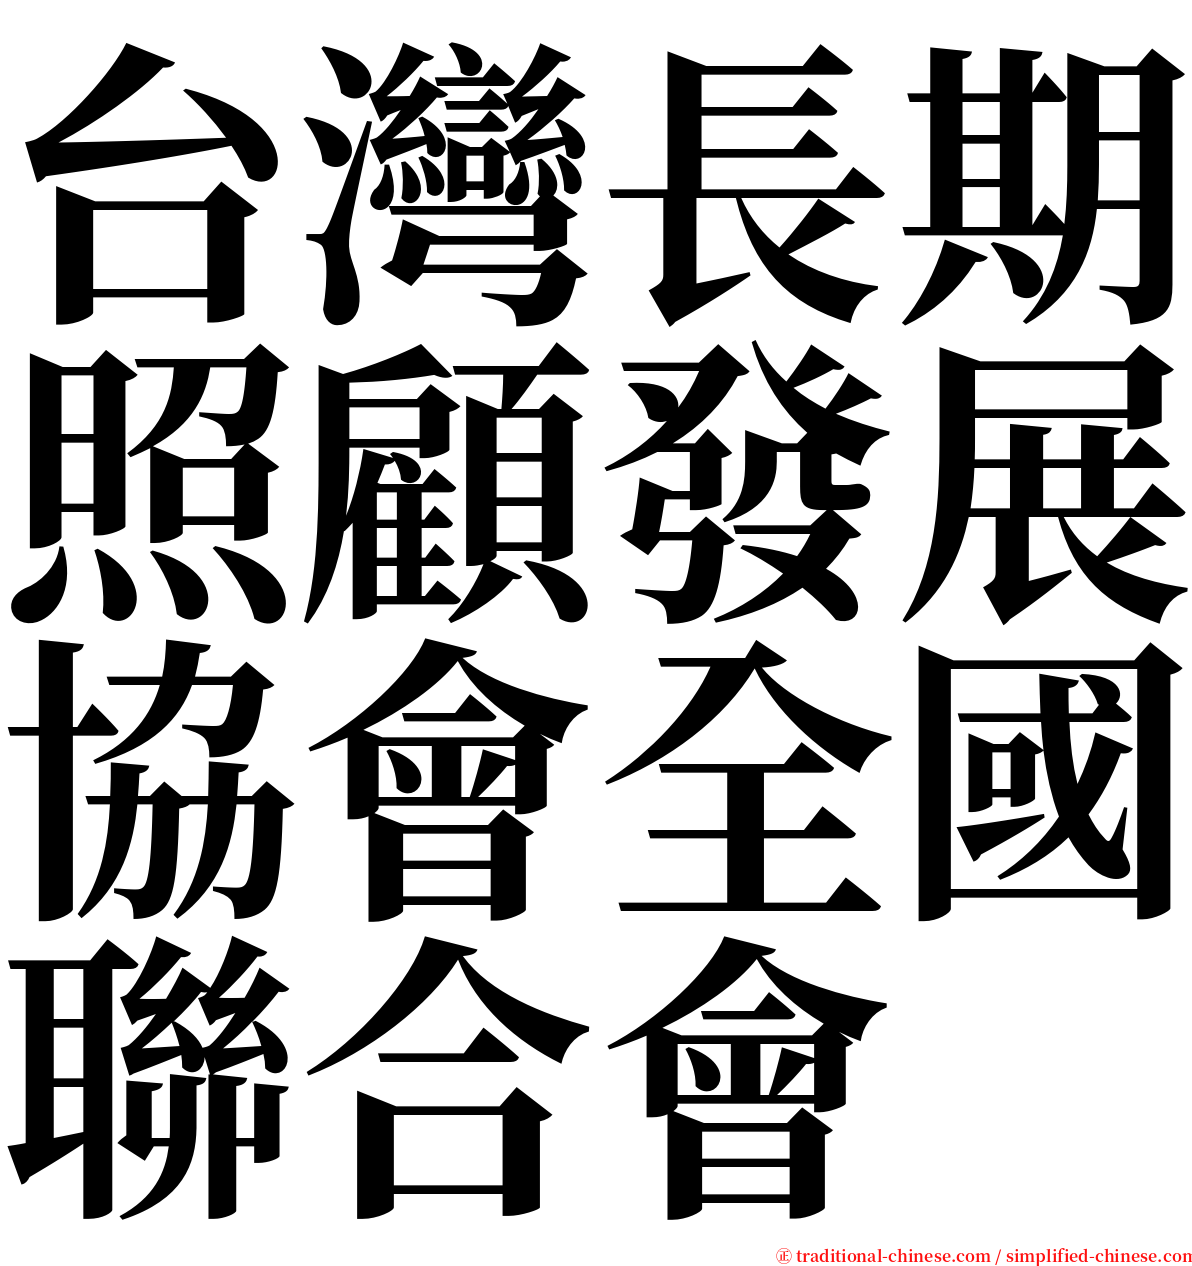 台灣長期照顧發展協會全國聯合會 serif font